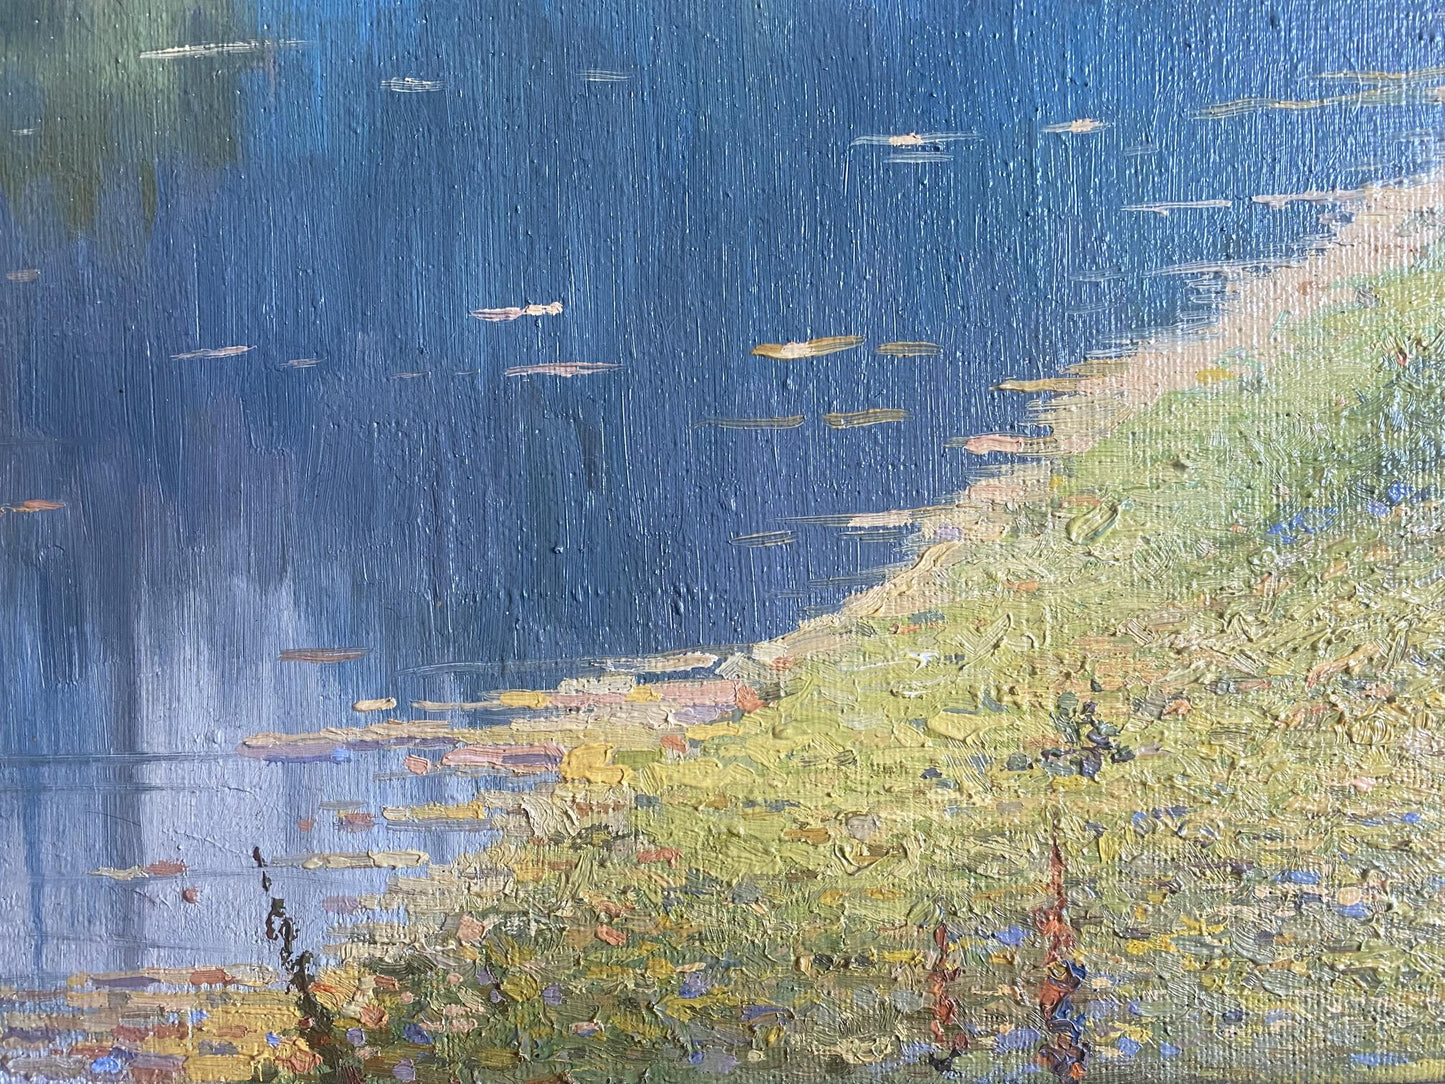 Oil painting Autumn Valentin Stepanovich Tereshenko